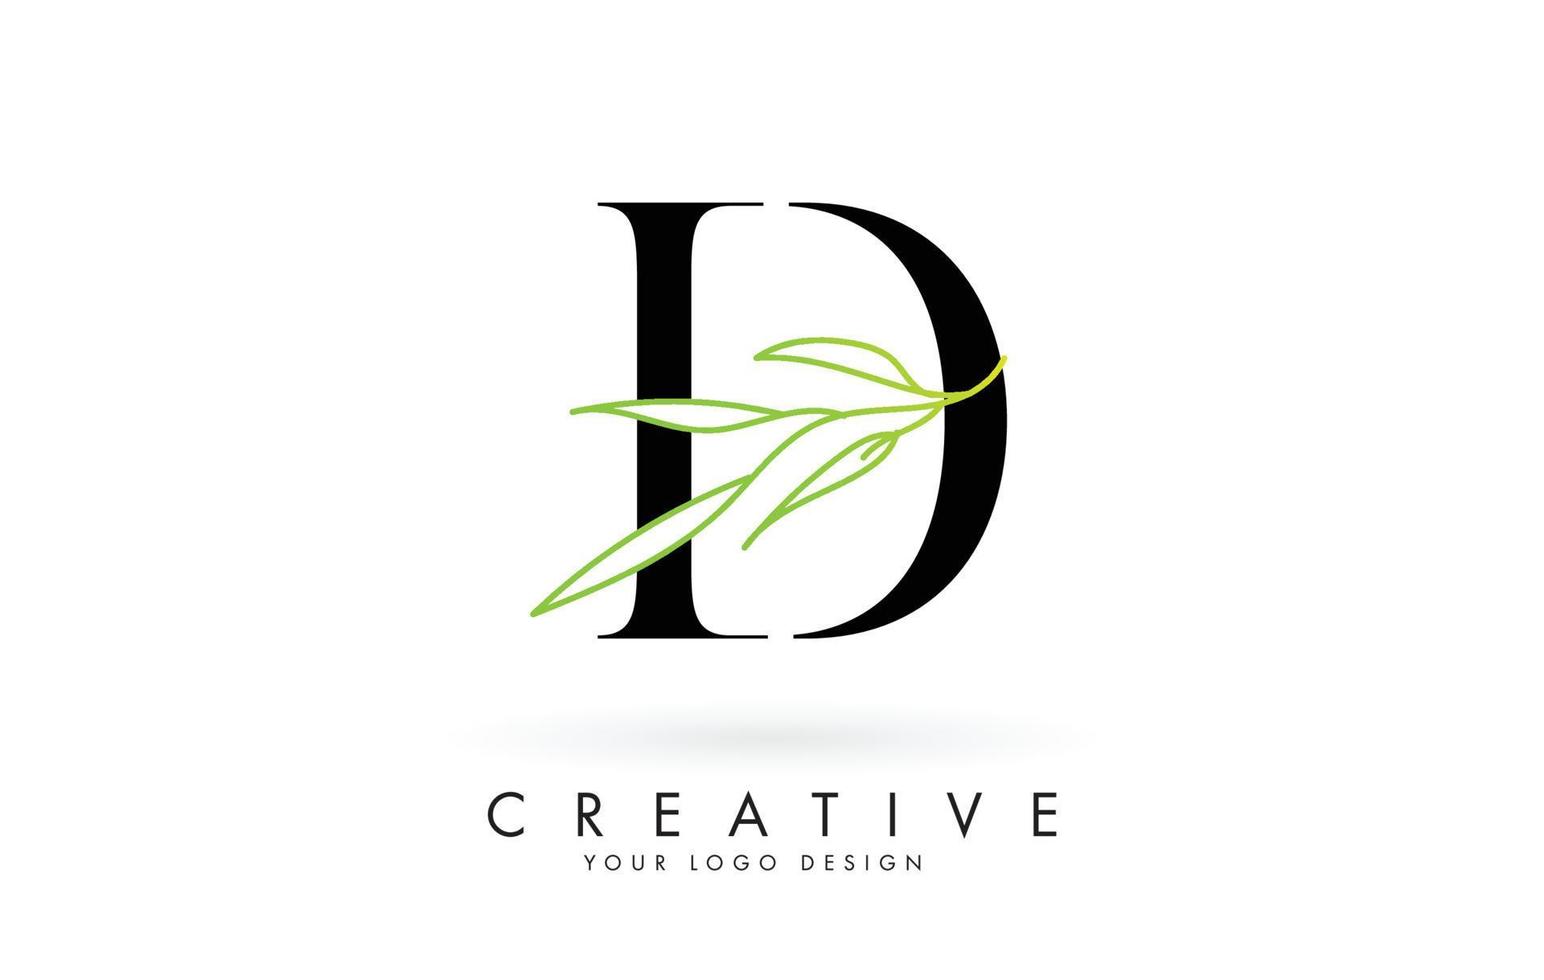 Elegant D letter logo design with long leaves branch vector illustration.